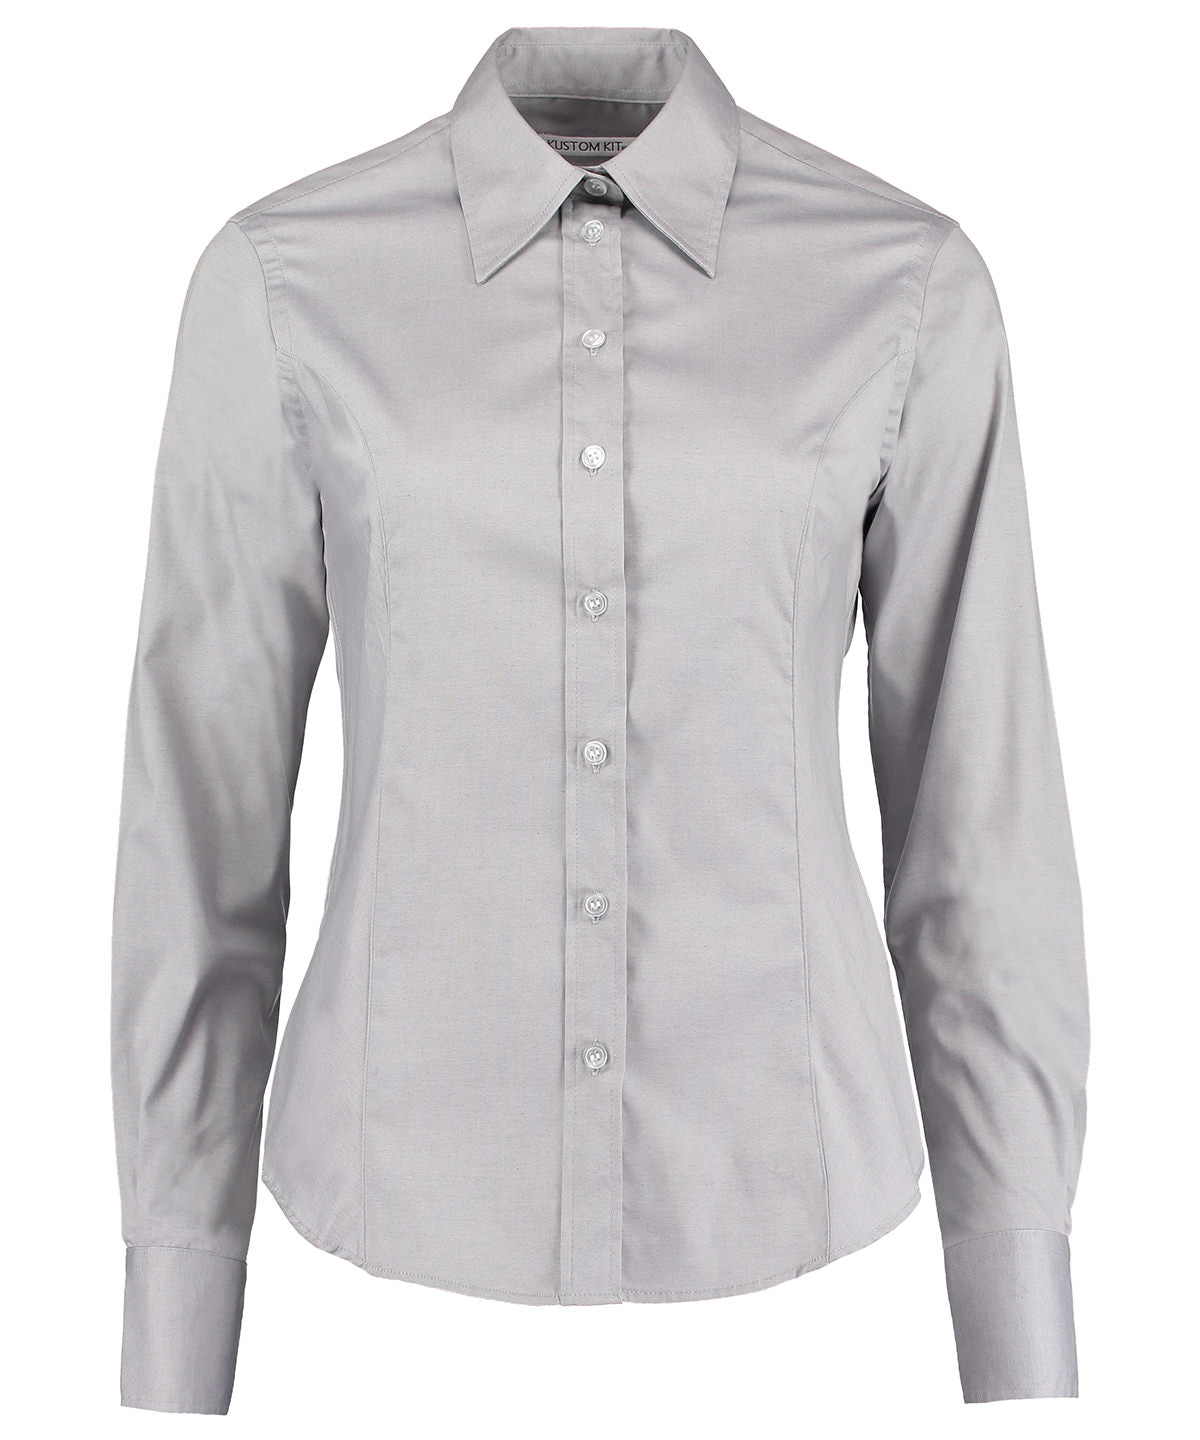 Kustom Kit Women's corporate Oxford blouse long-sleeved